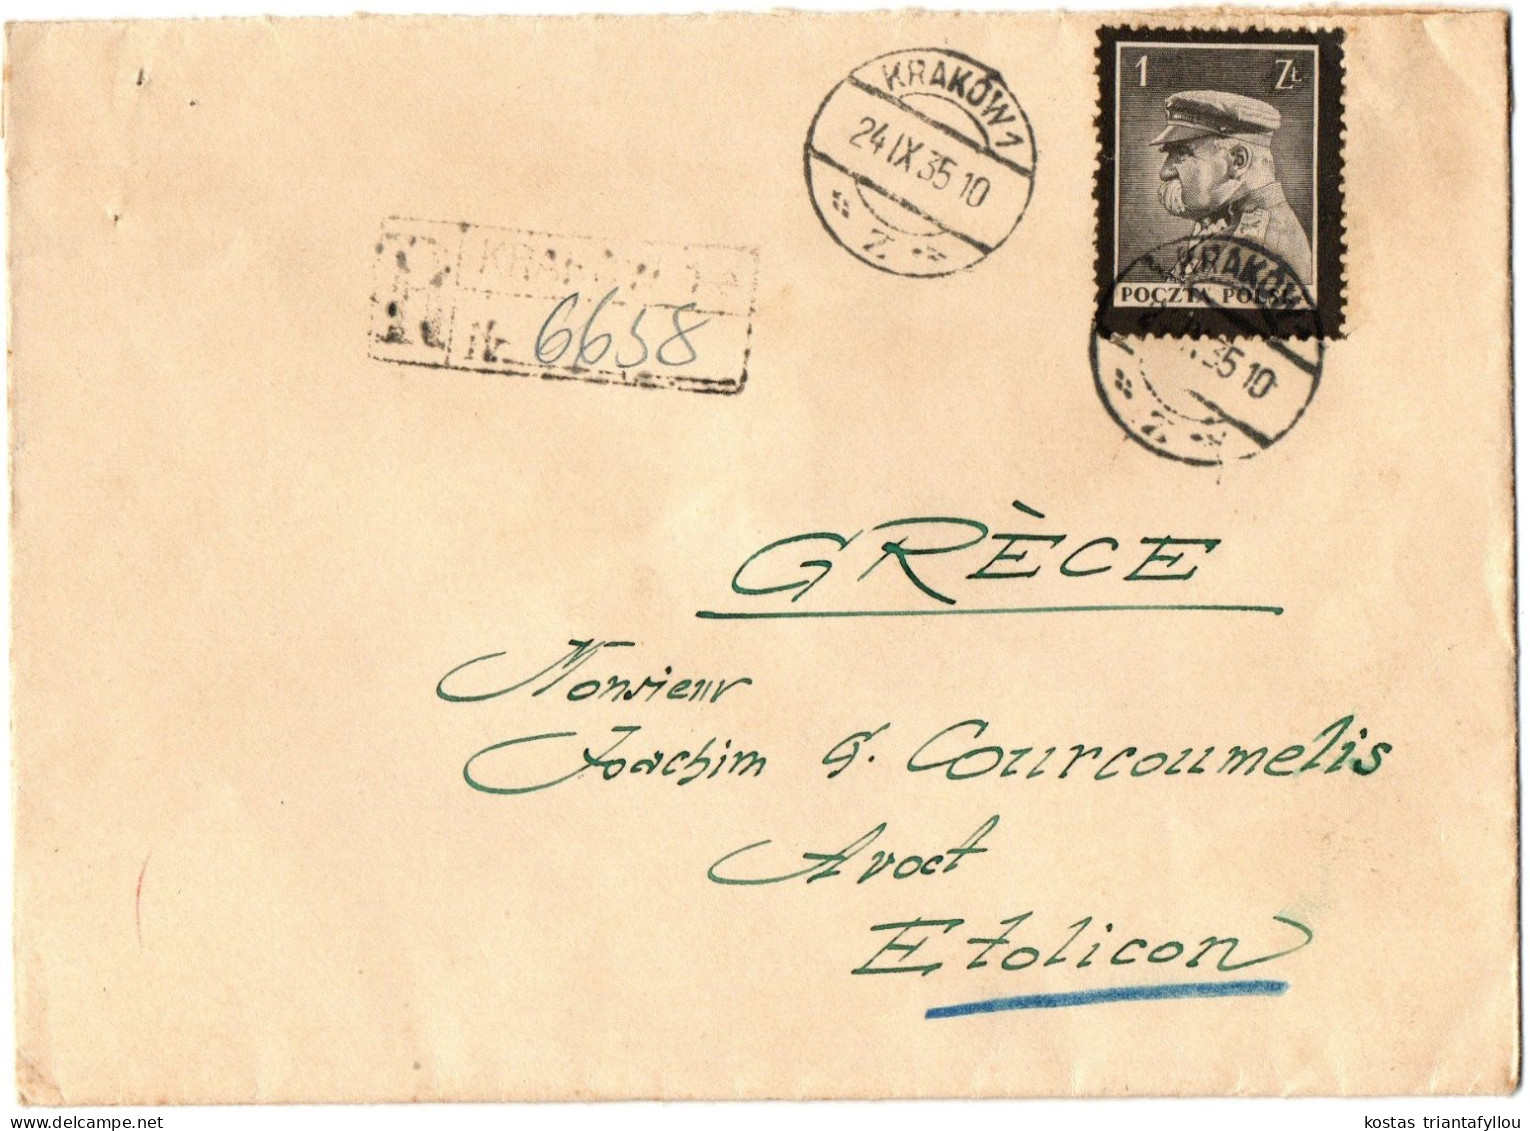 1, 4 POLAND, 1935, COVER TO GREECE - Briefe U. Dokumente